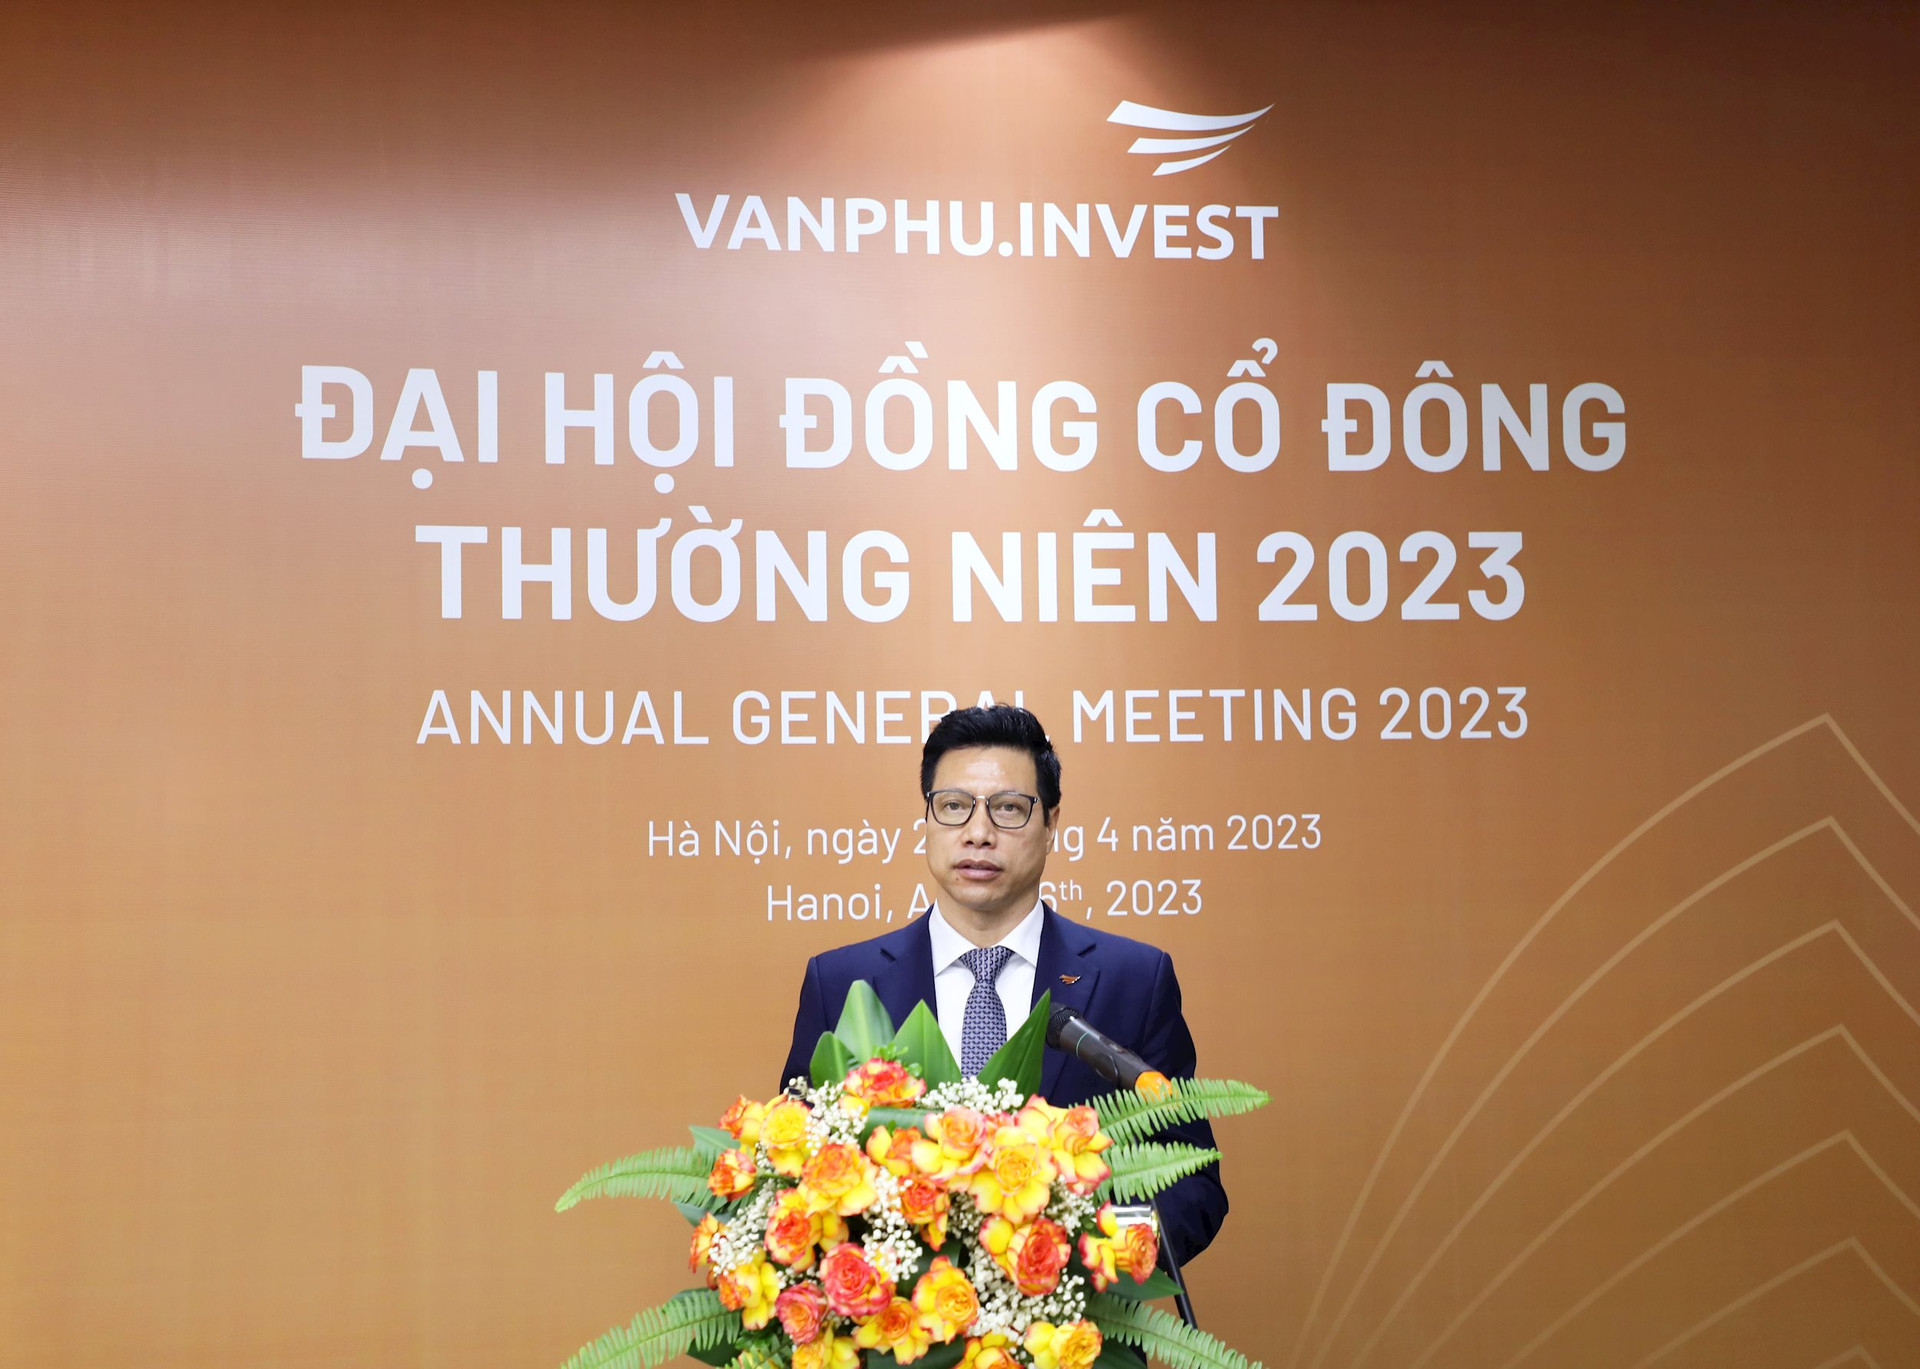 Văn Phú - Invest lên kế hoạch lợi nhuận 550 tỷ đồng năm 2023 - Ảnh 1.